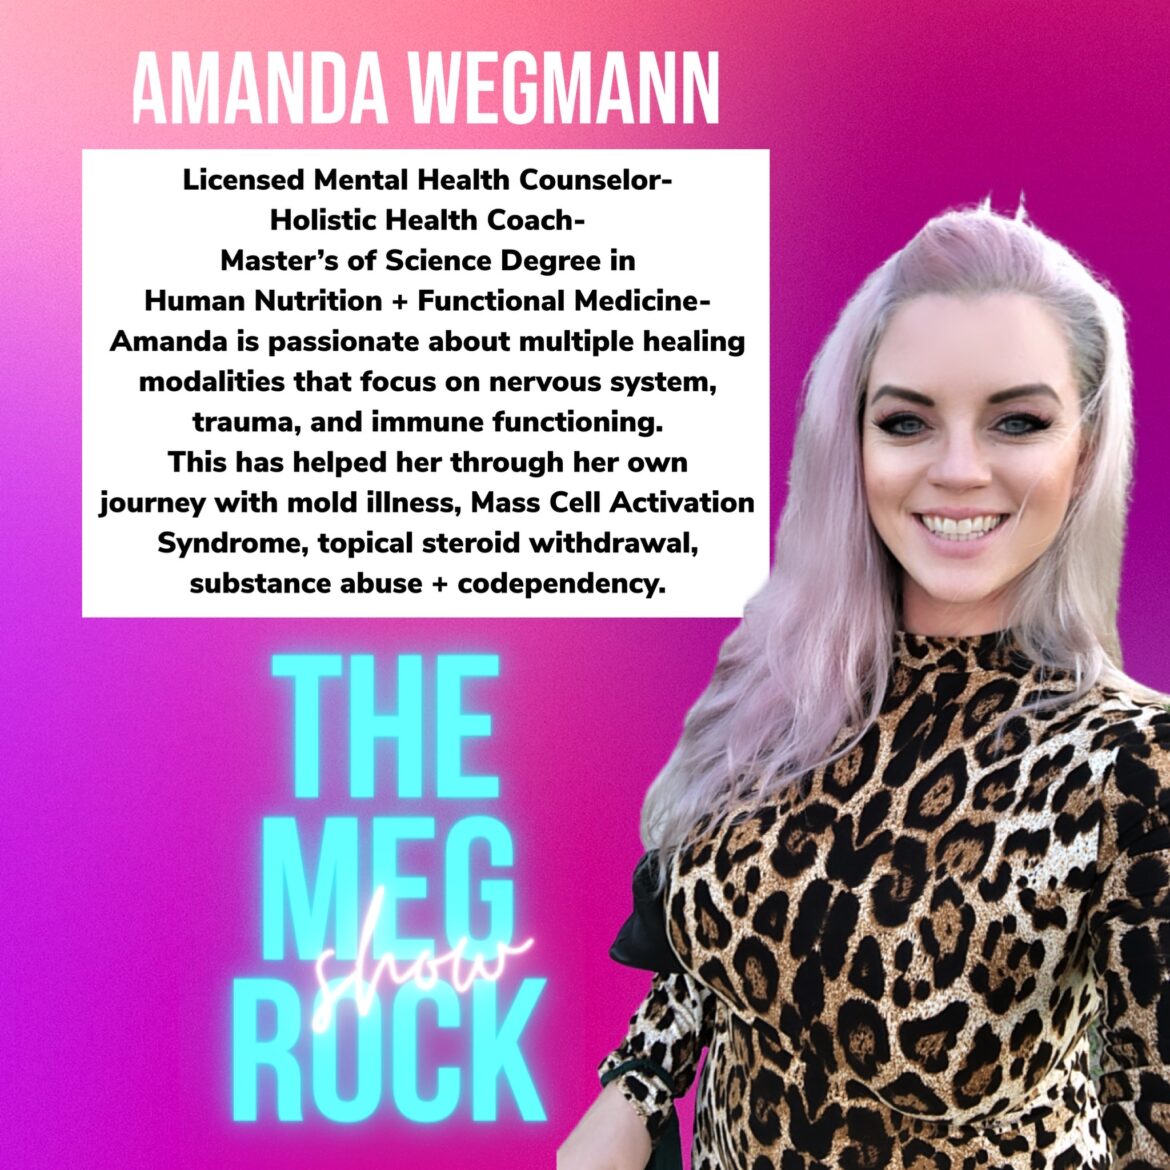 Amanda Wegman